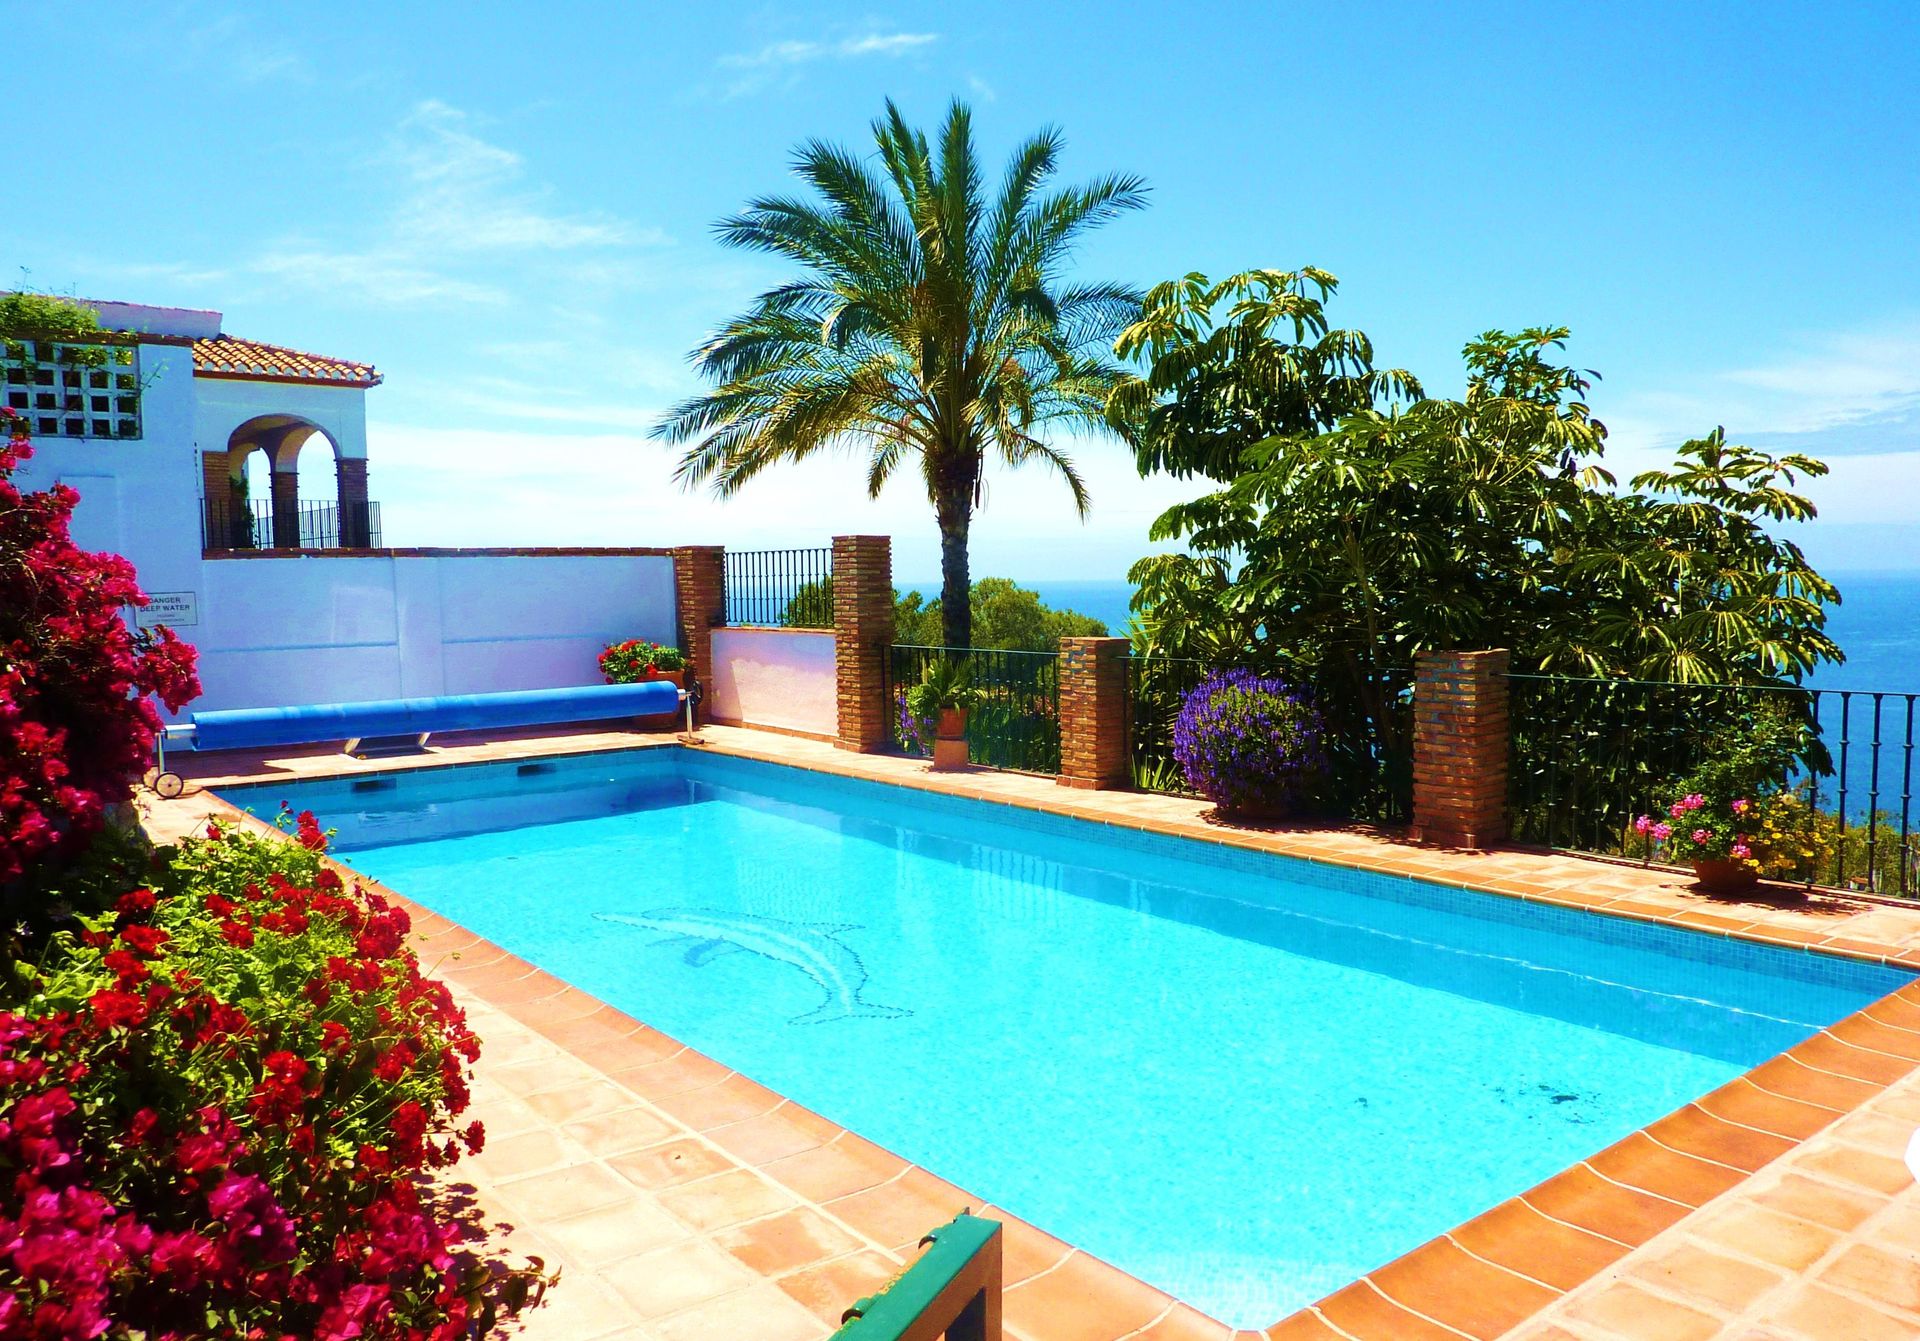 A luxury family-friendly beachfront villa in La Herradura. With heated private pool